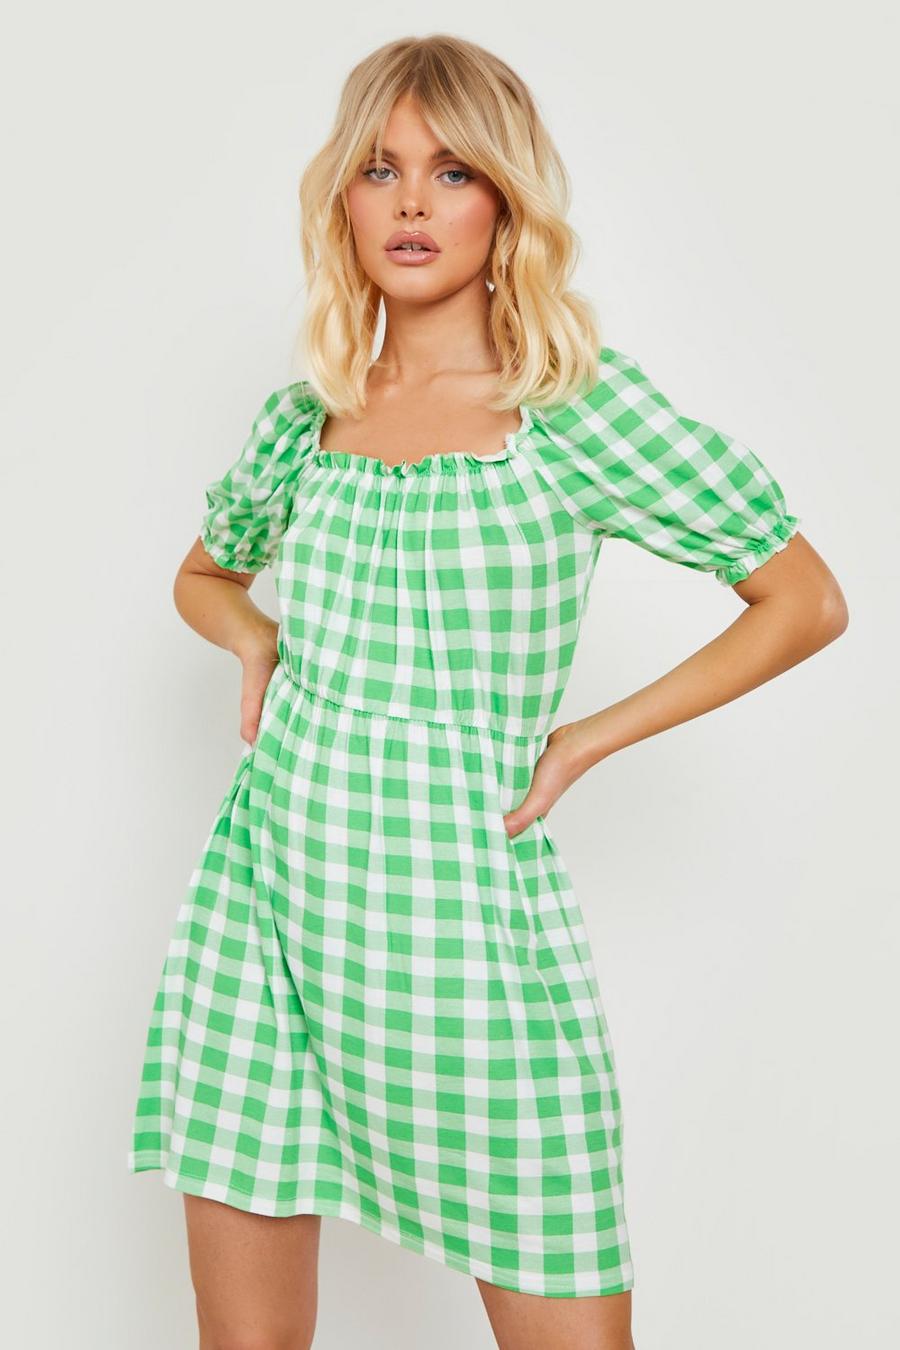 ירוק verde שמלת קיץ עם הדפס גינגהם ושרוולים תפוחים